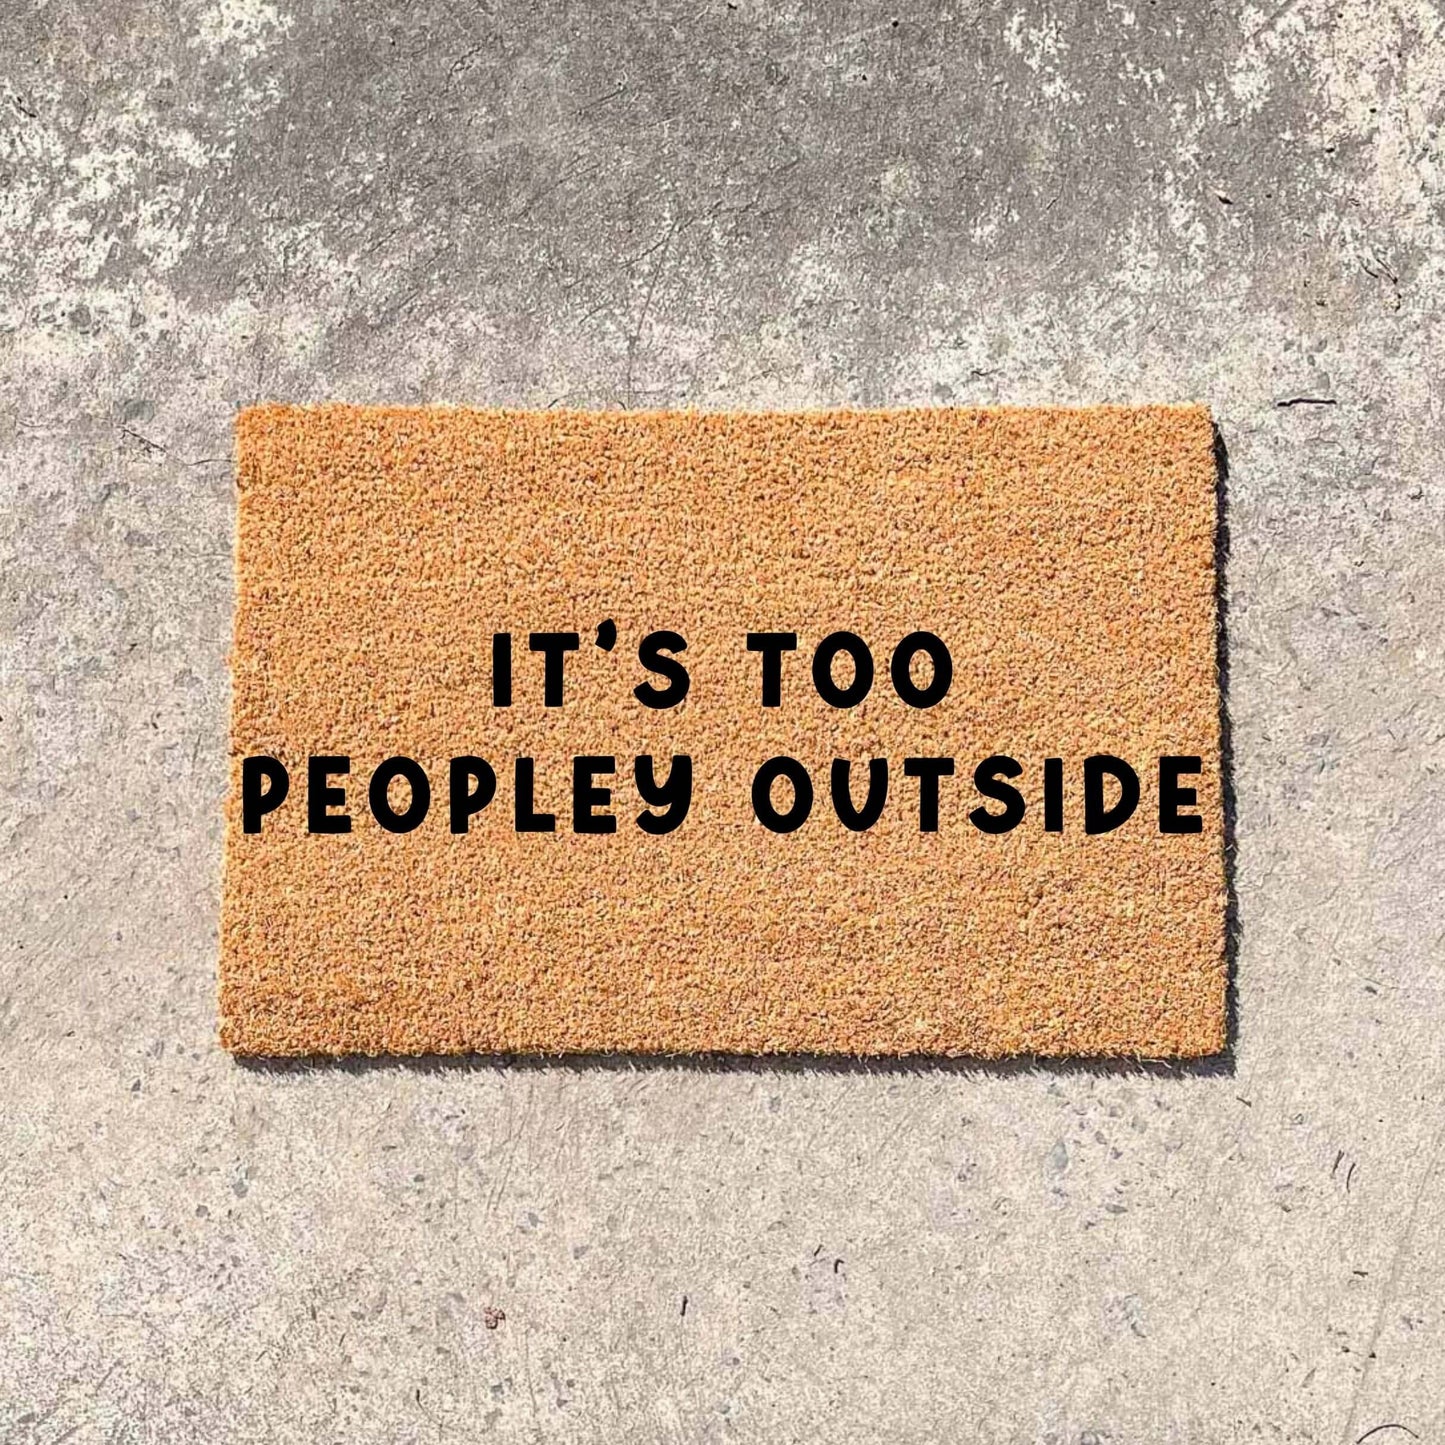 It's too peopley outside doormat, custom doormat, personalised doormat, door mat